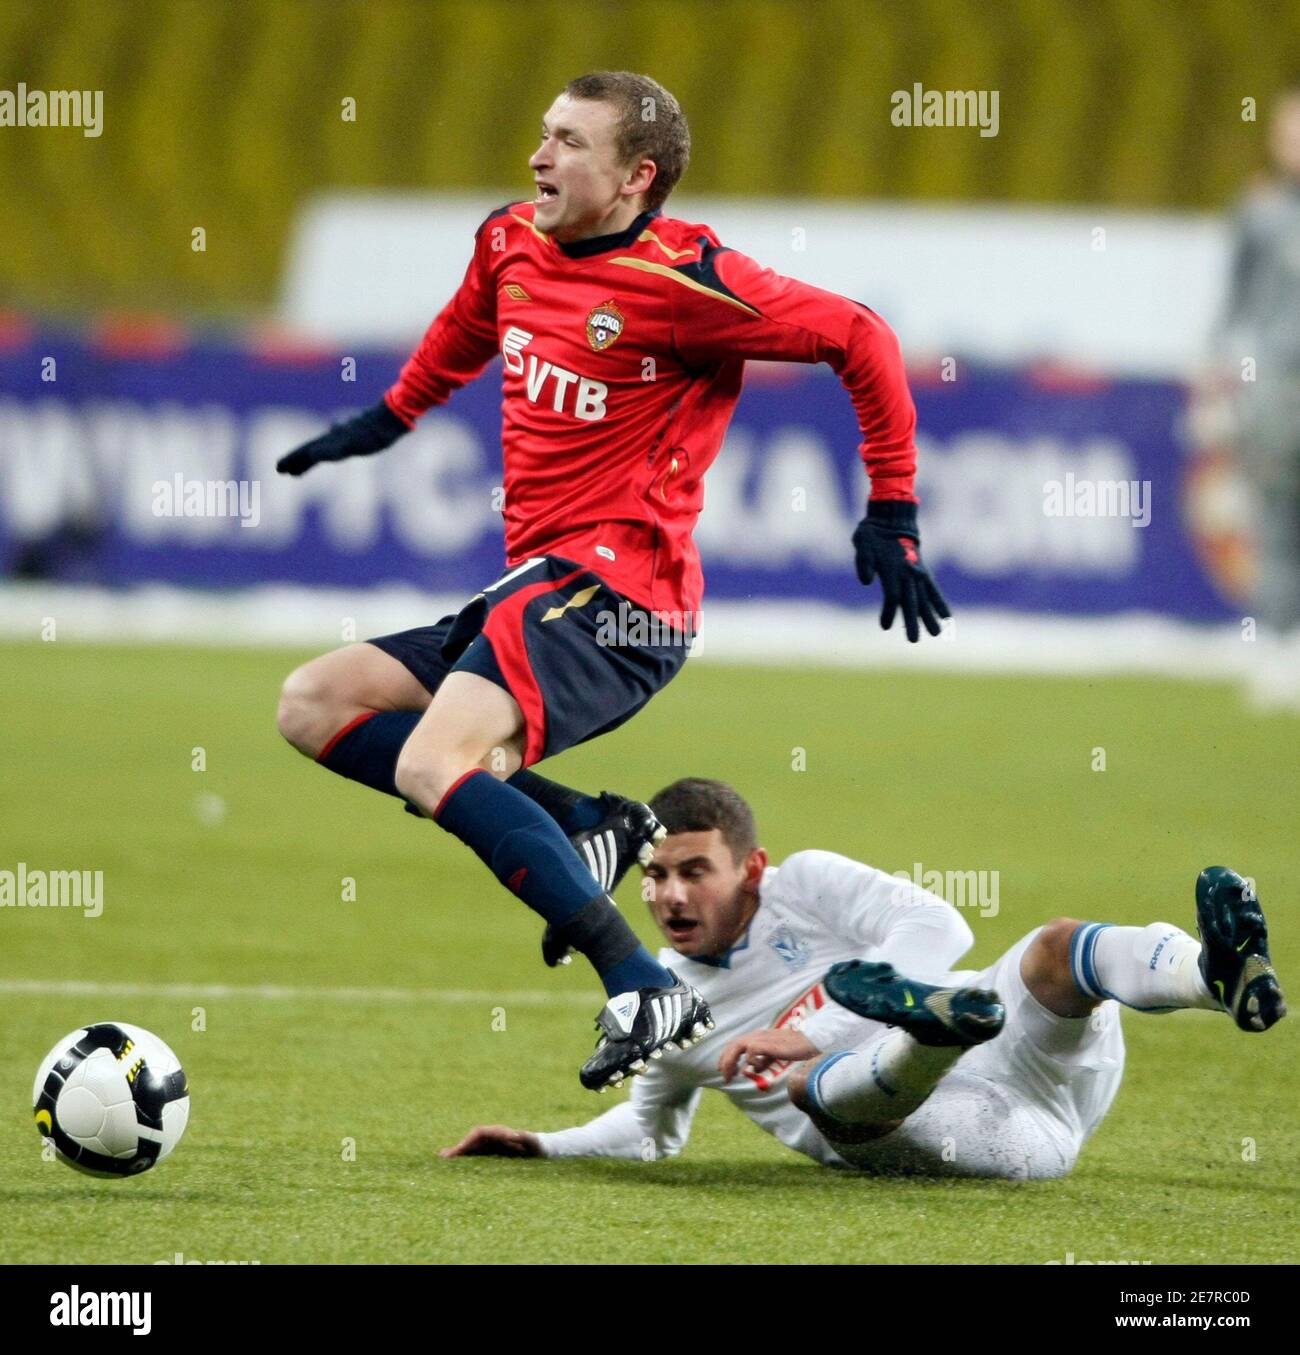 Jakub Wilk (R) de Lech Poznan lucha por el balón con Pavel Mamaev de CSKA  Moscú durante su partido de fútbol de la Copa de la UEFA en Moscú, el 27 de